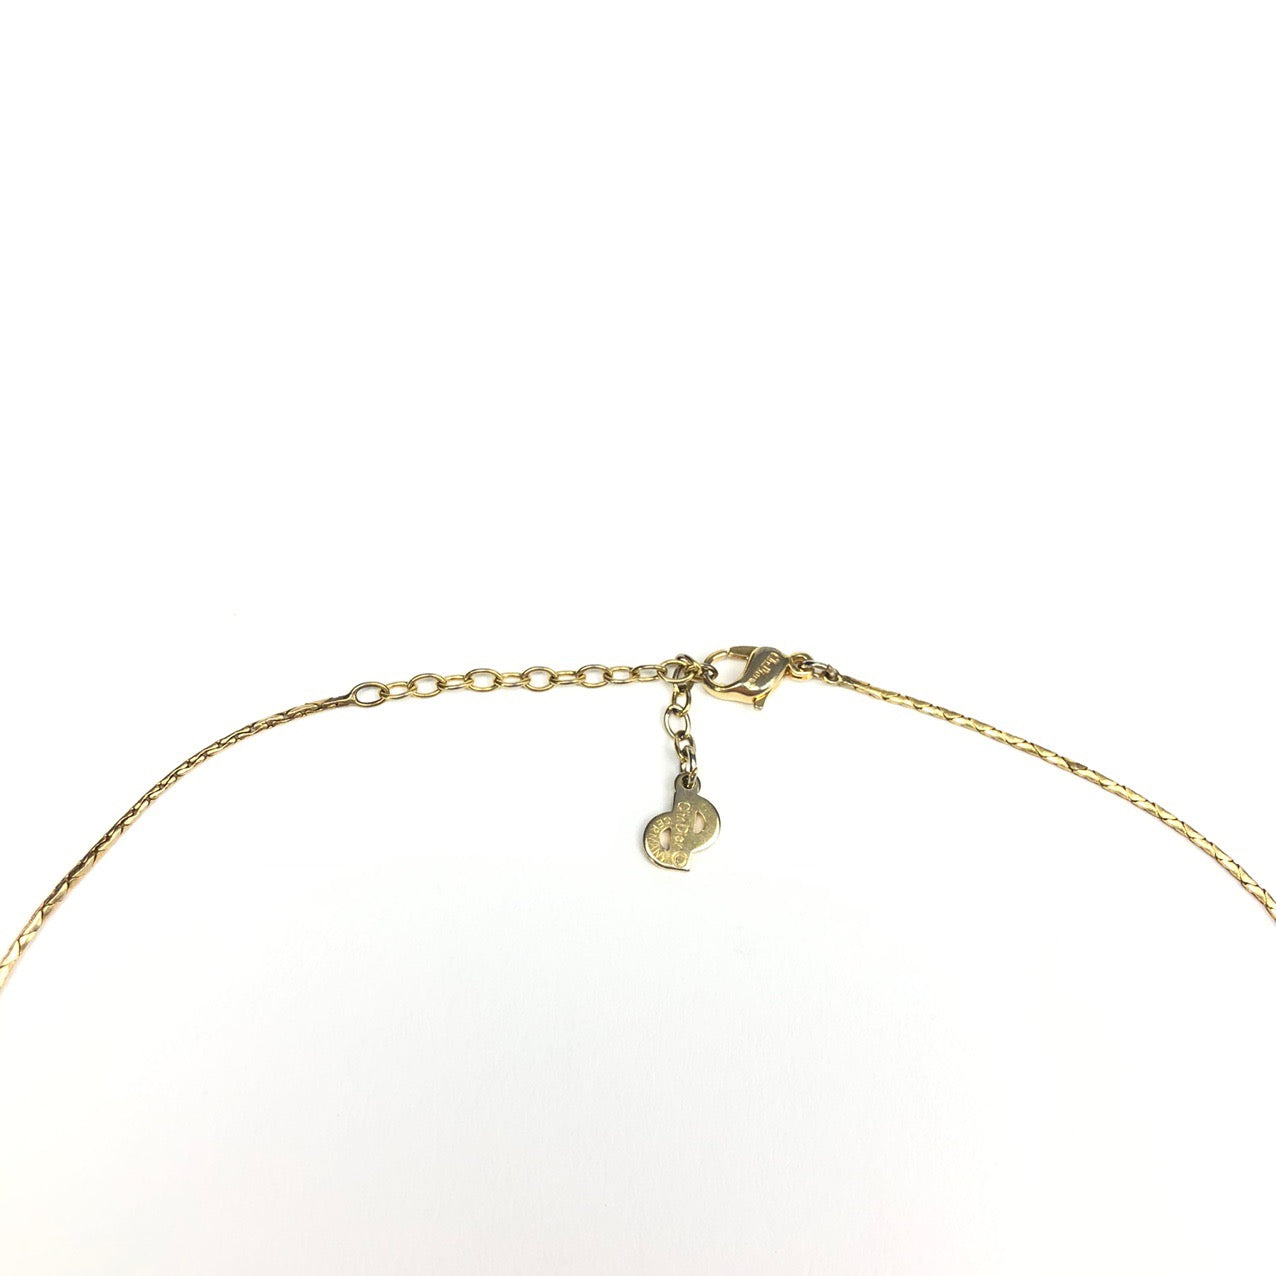 Christian Dior Monogram Necklace